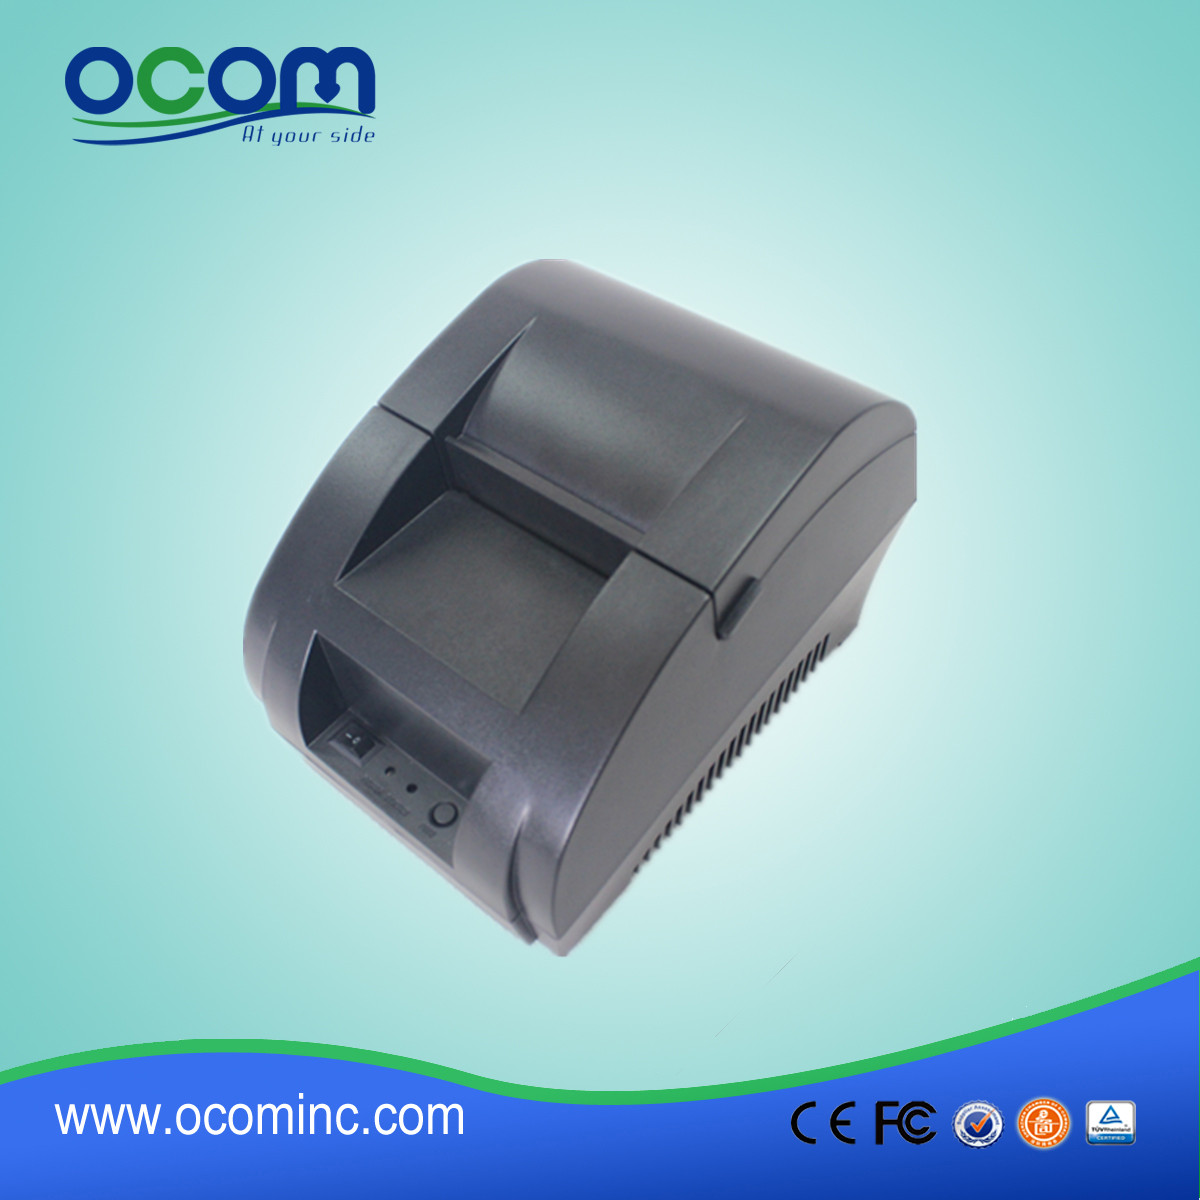 Impressora de recebimento térmico OCPP-58Z 58mm com adaptador de alimentação incorporado